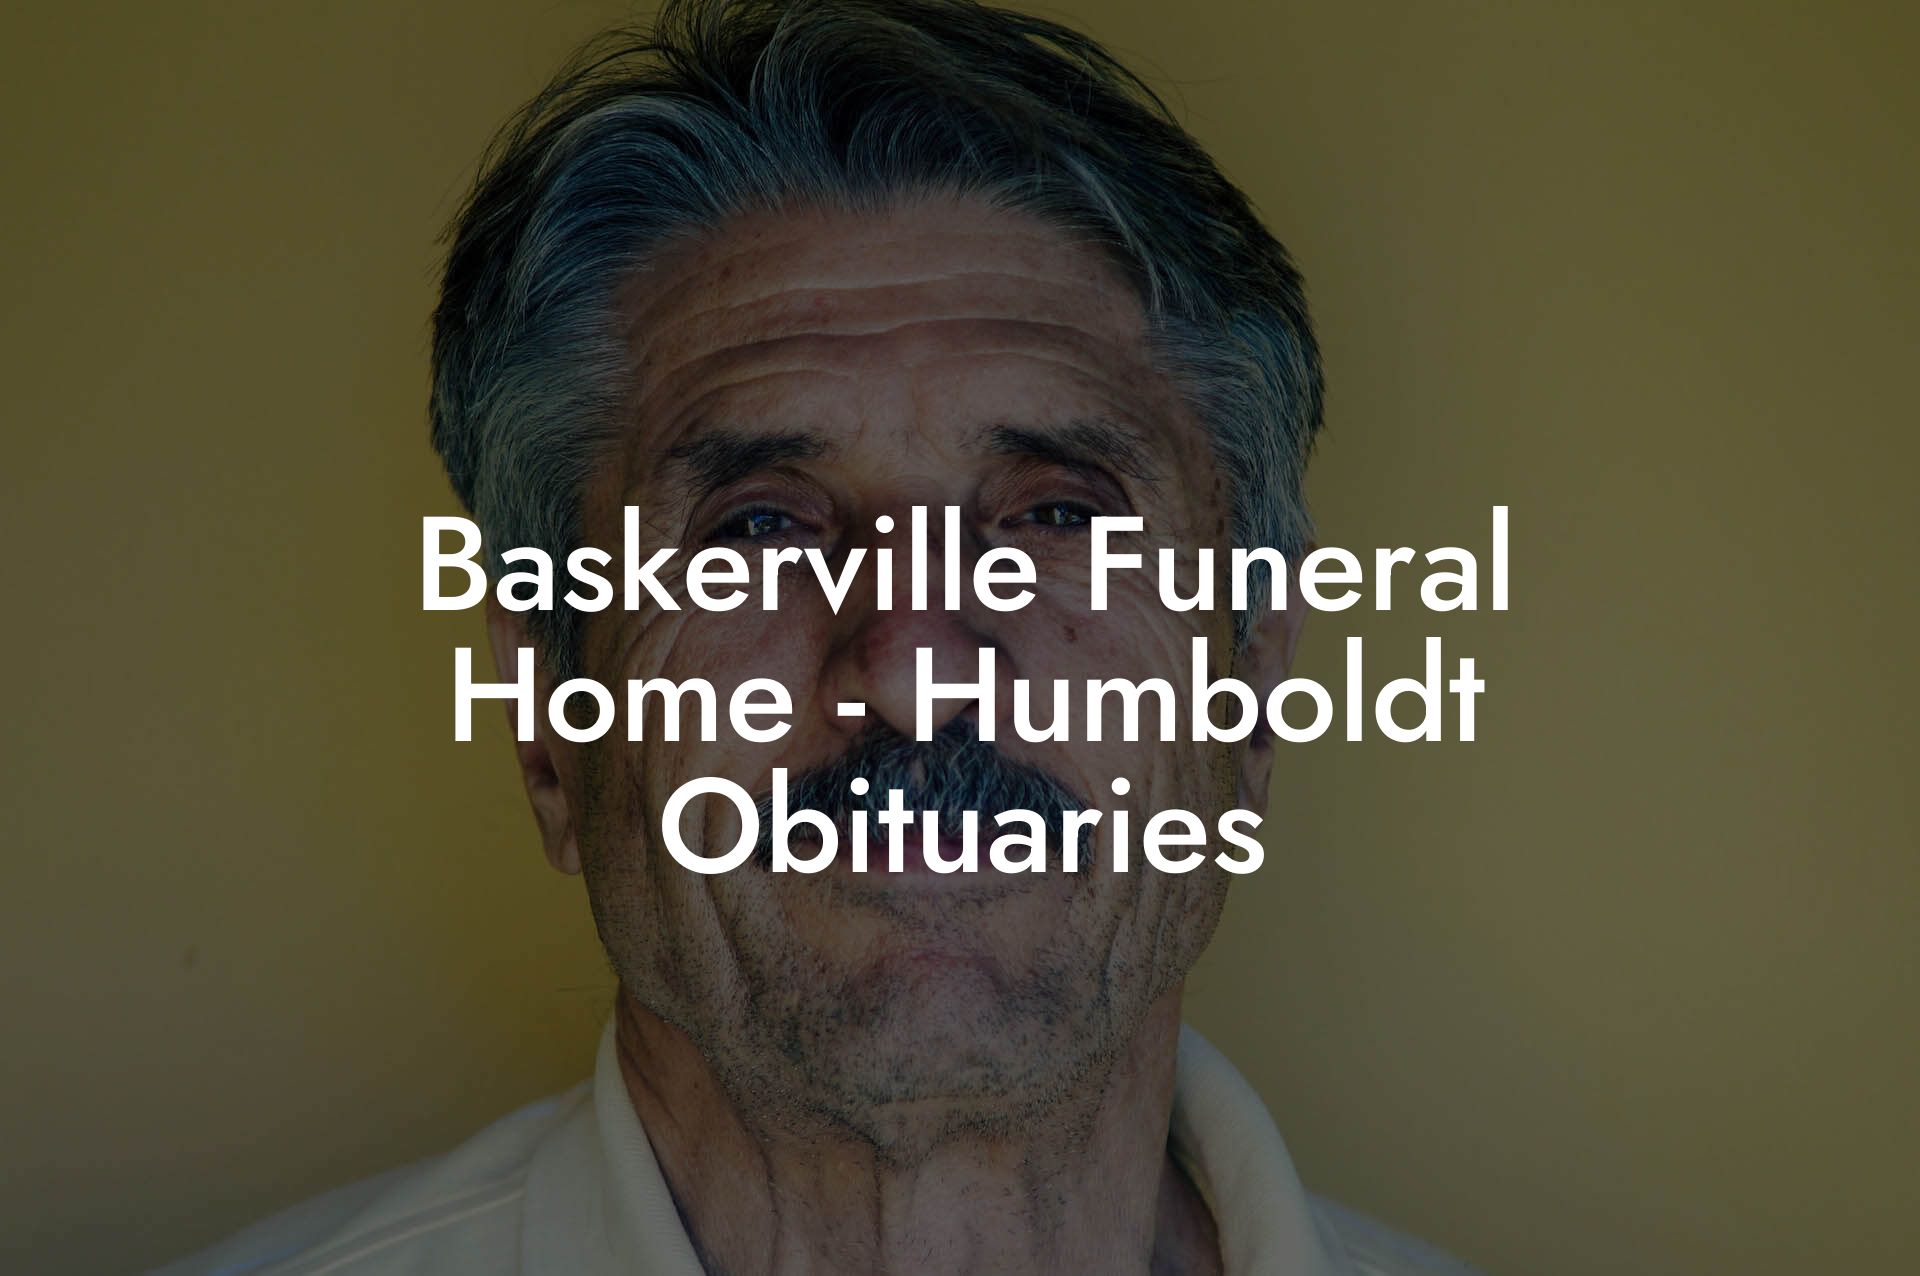 Baskerville Funeral Home - Humboldt Obituaries